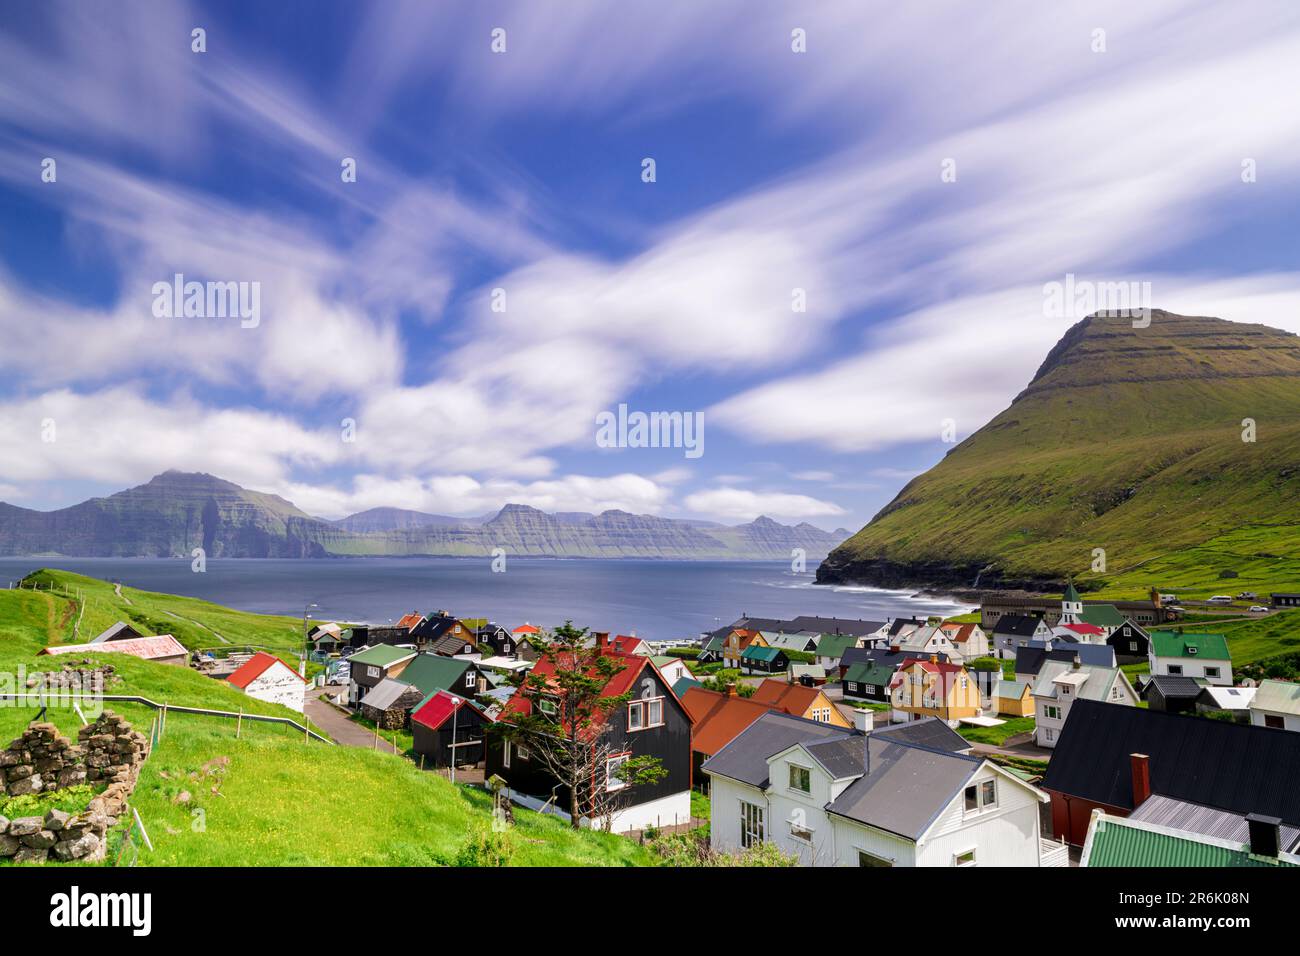 Flauschige Wolken am Sommerhimmel über den traditionellen Häusern von Gjogv, Eysturoy Island, Färöer Inseln, Dänemark, Europa Stockfoto